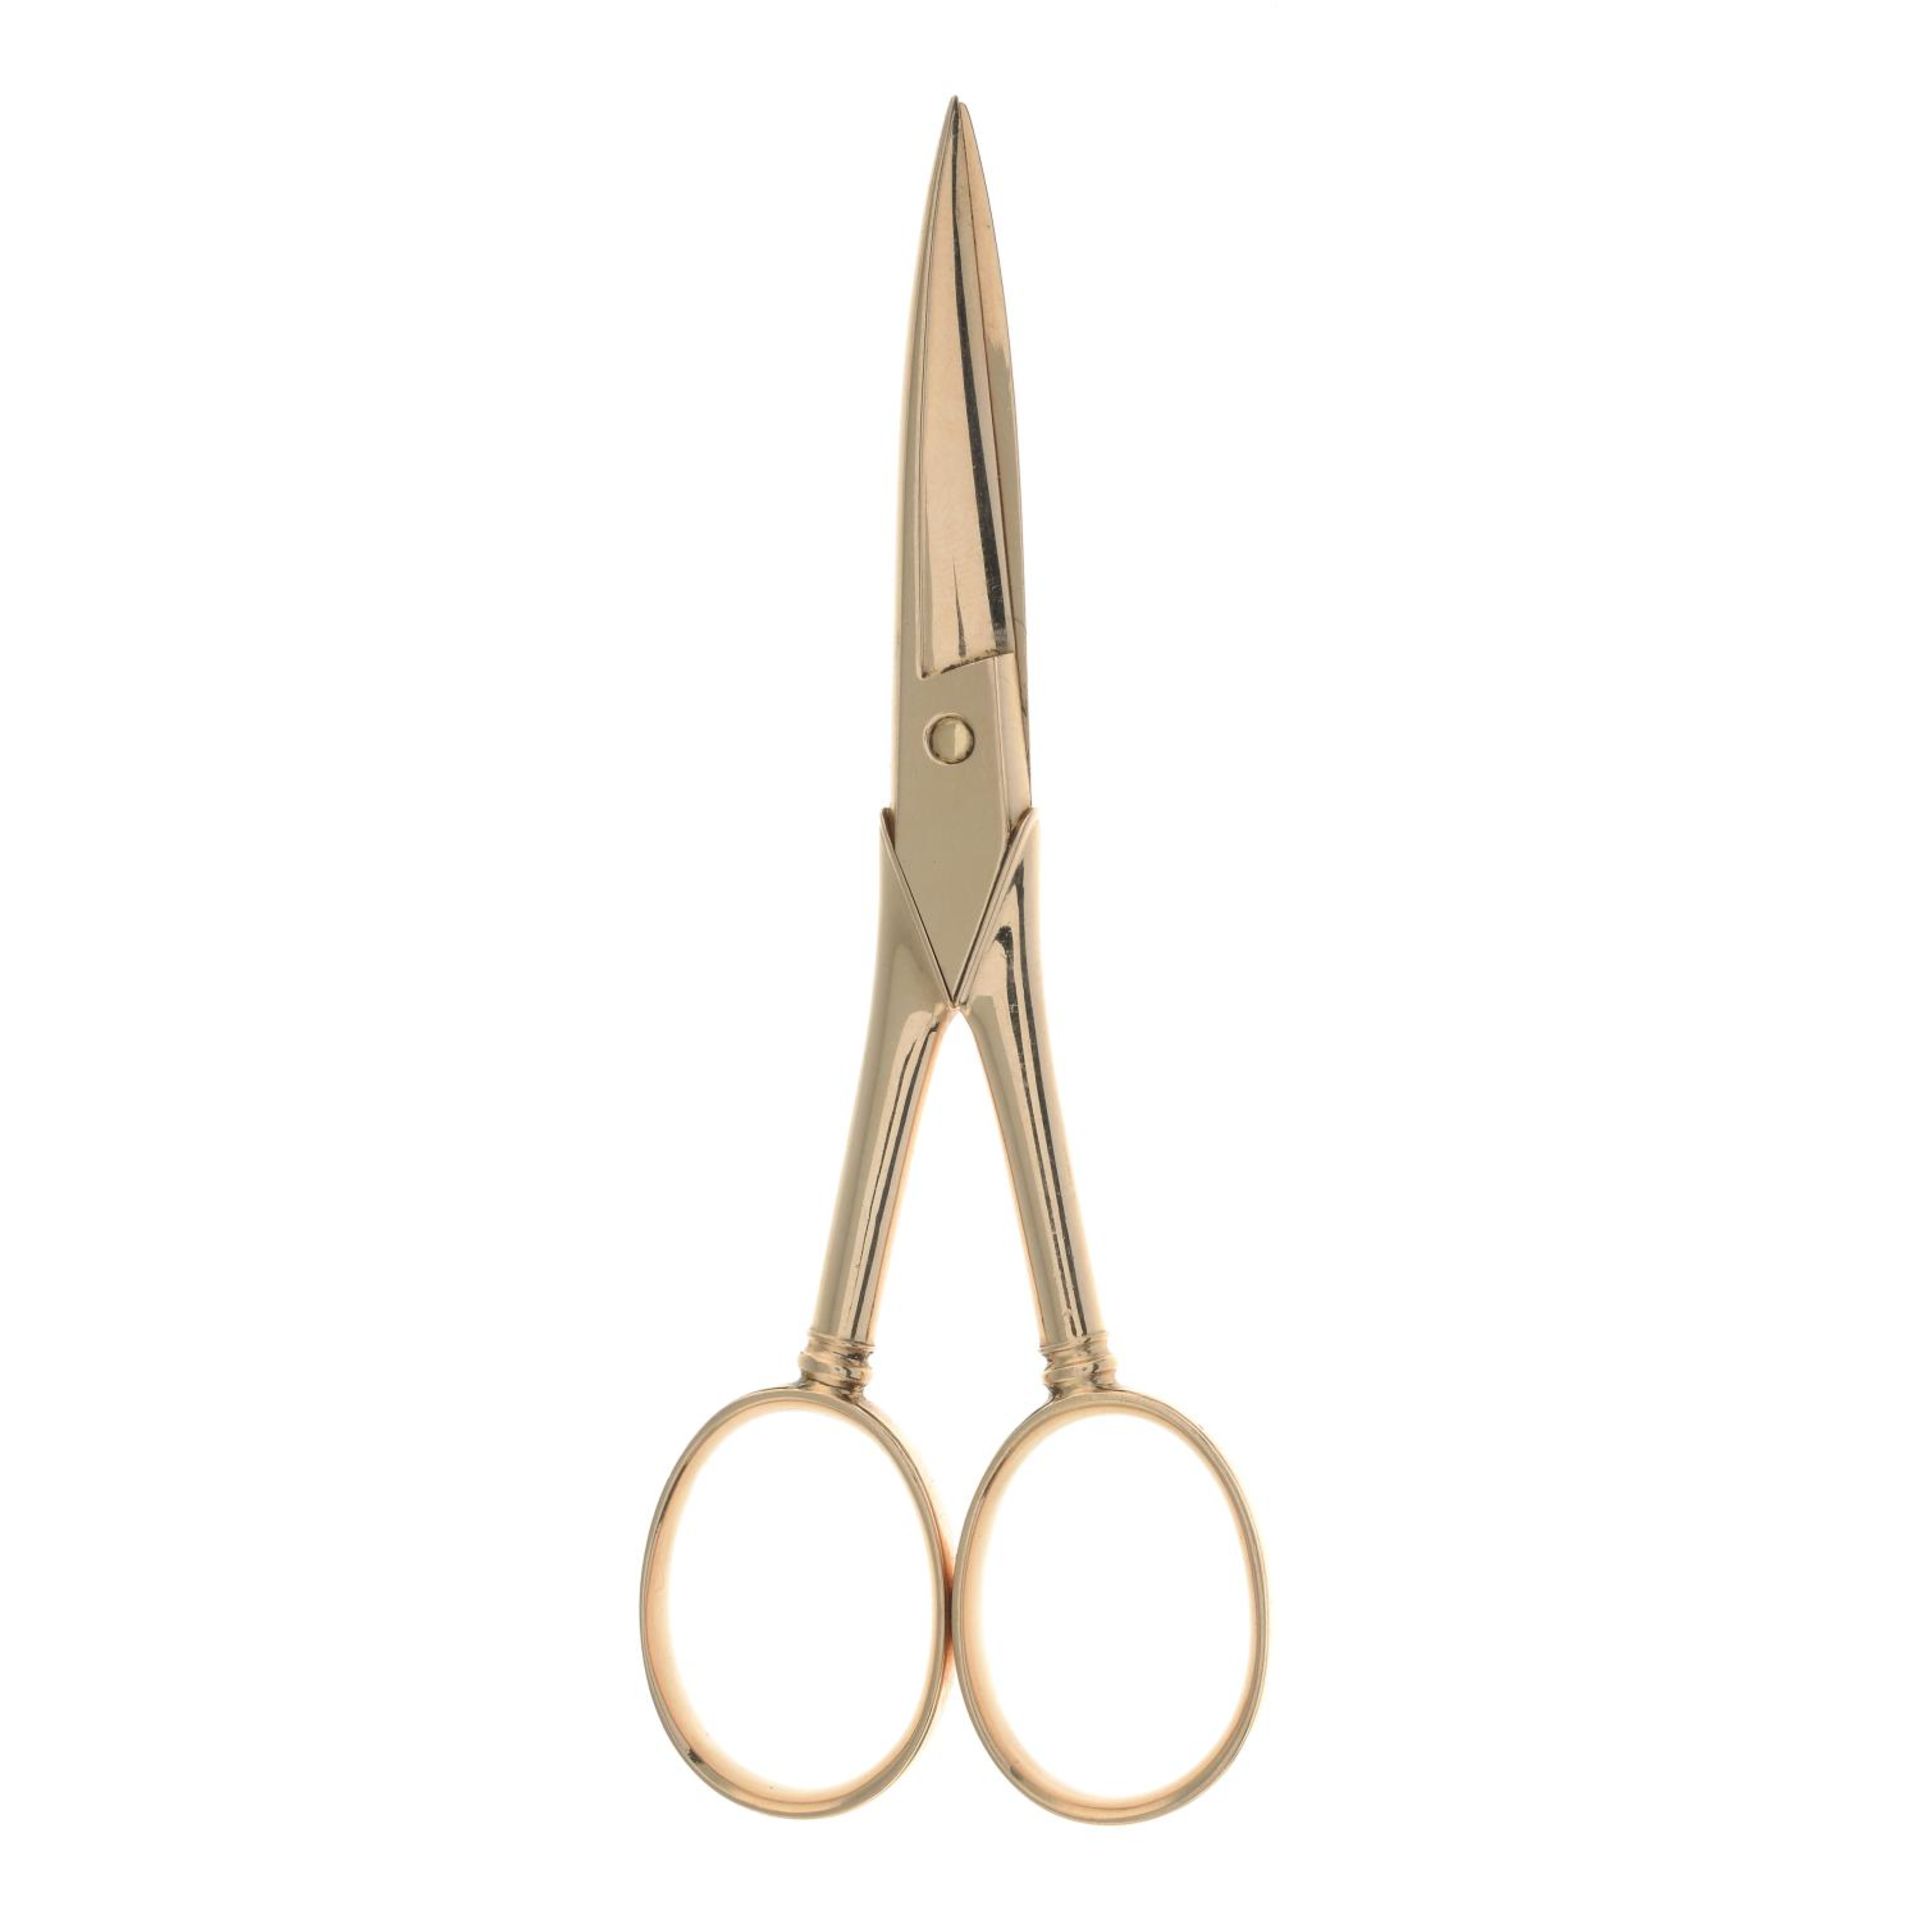 A pair of scissors.Length 8.8cms.